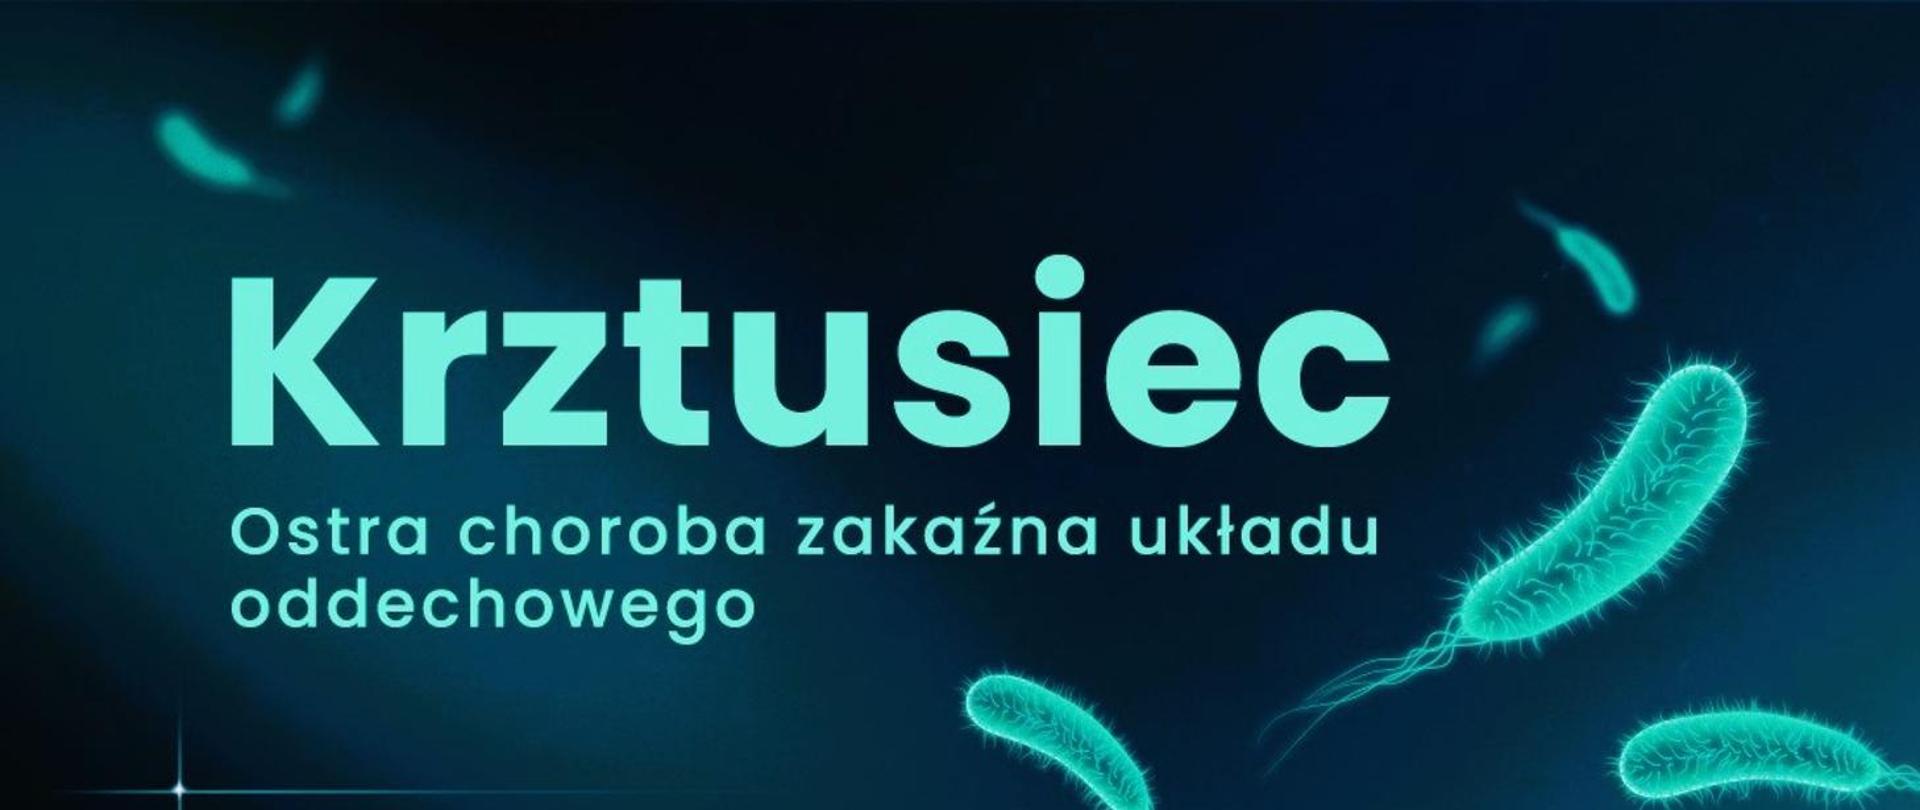 Krztusiec - logo